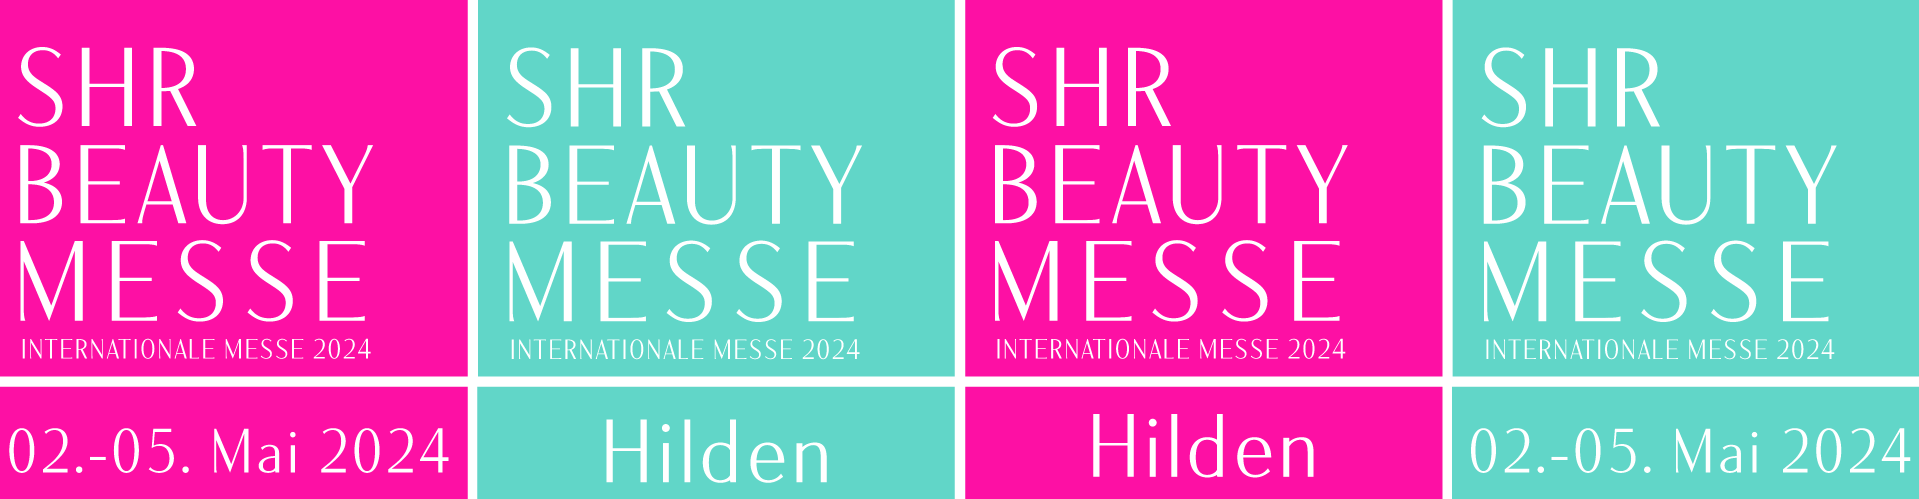 SHR Beauty Messe 2024